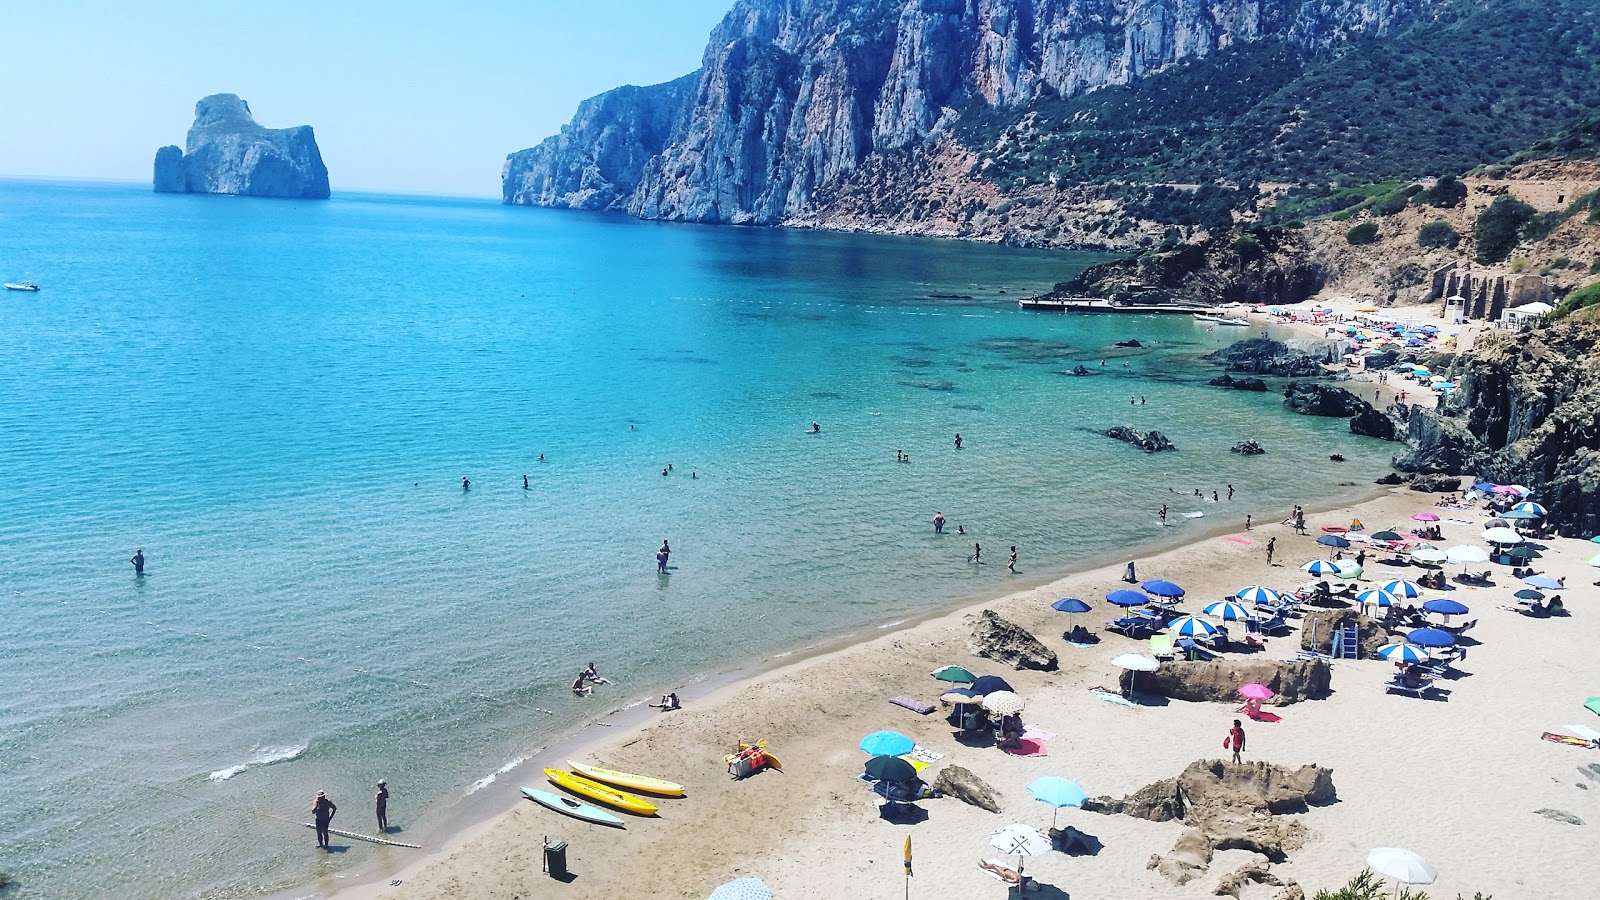 Photo of Spiaggia di Porto Cauli with blue pure water surface